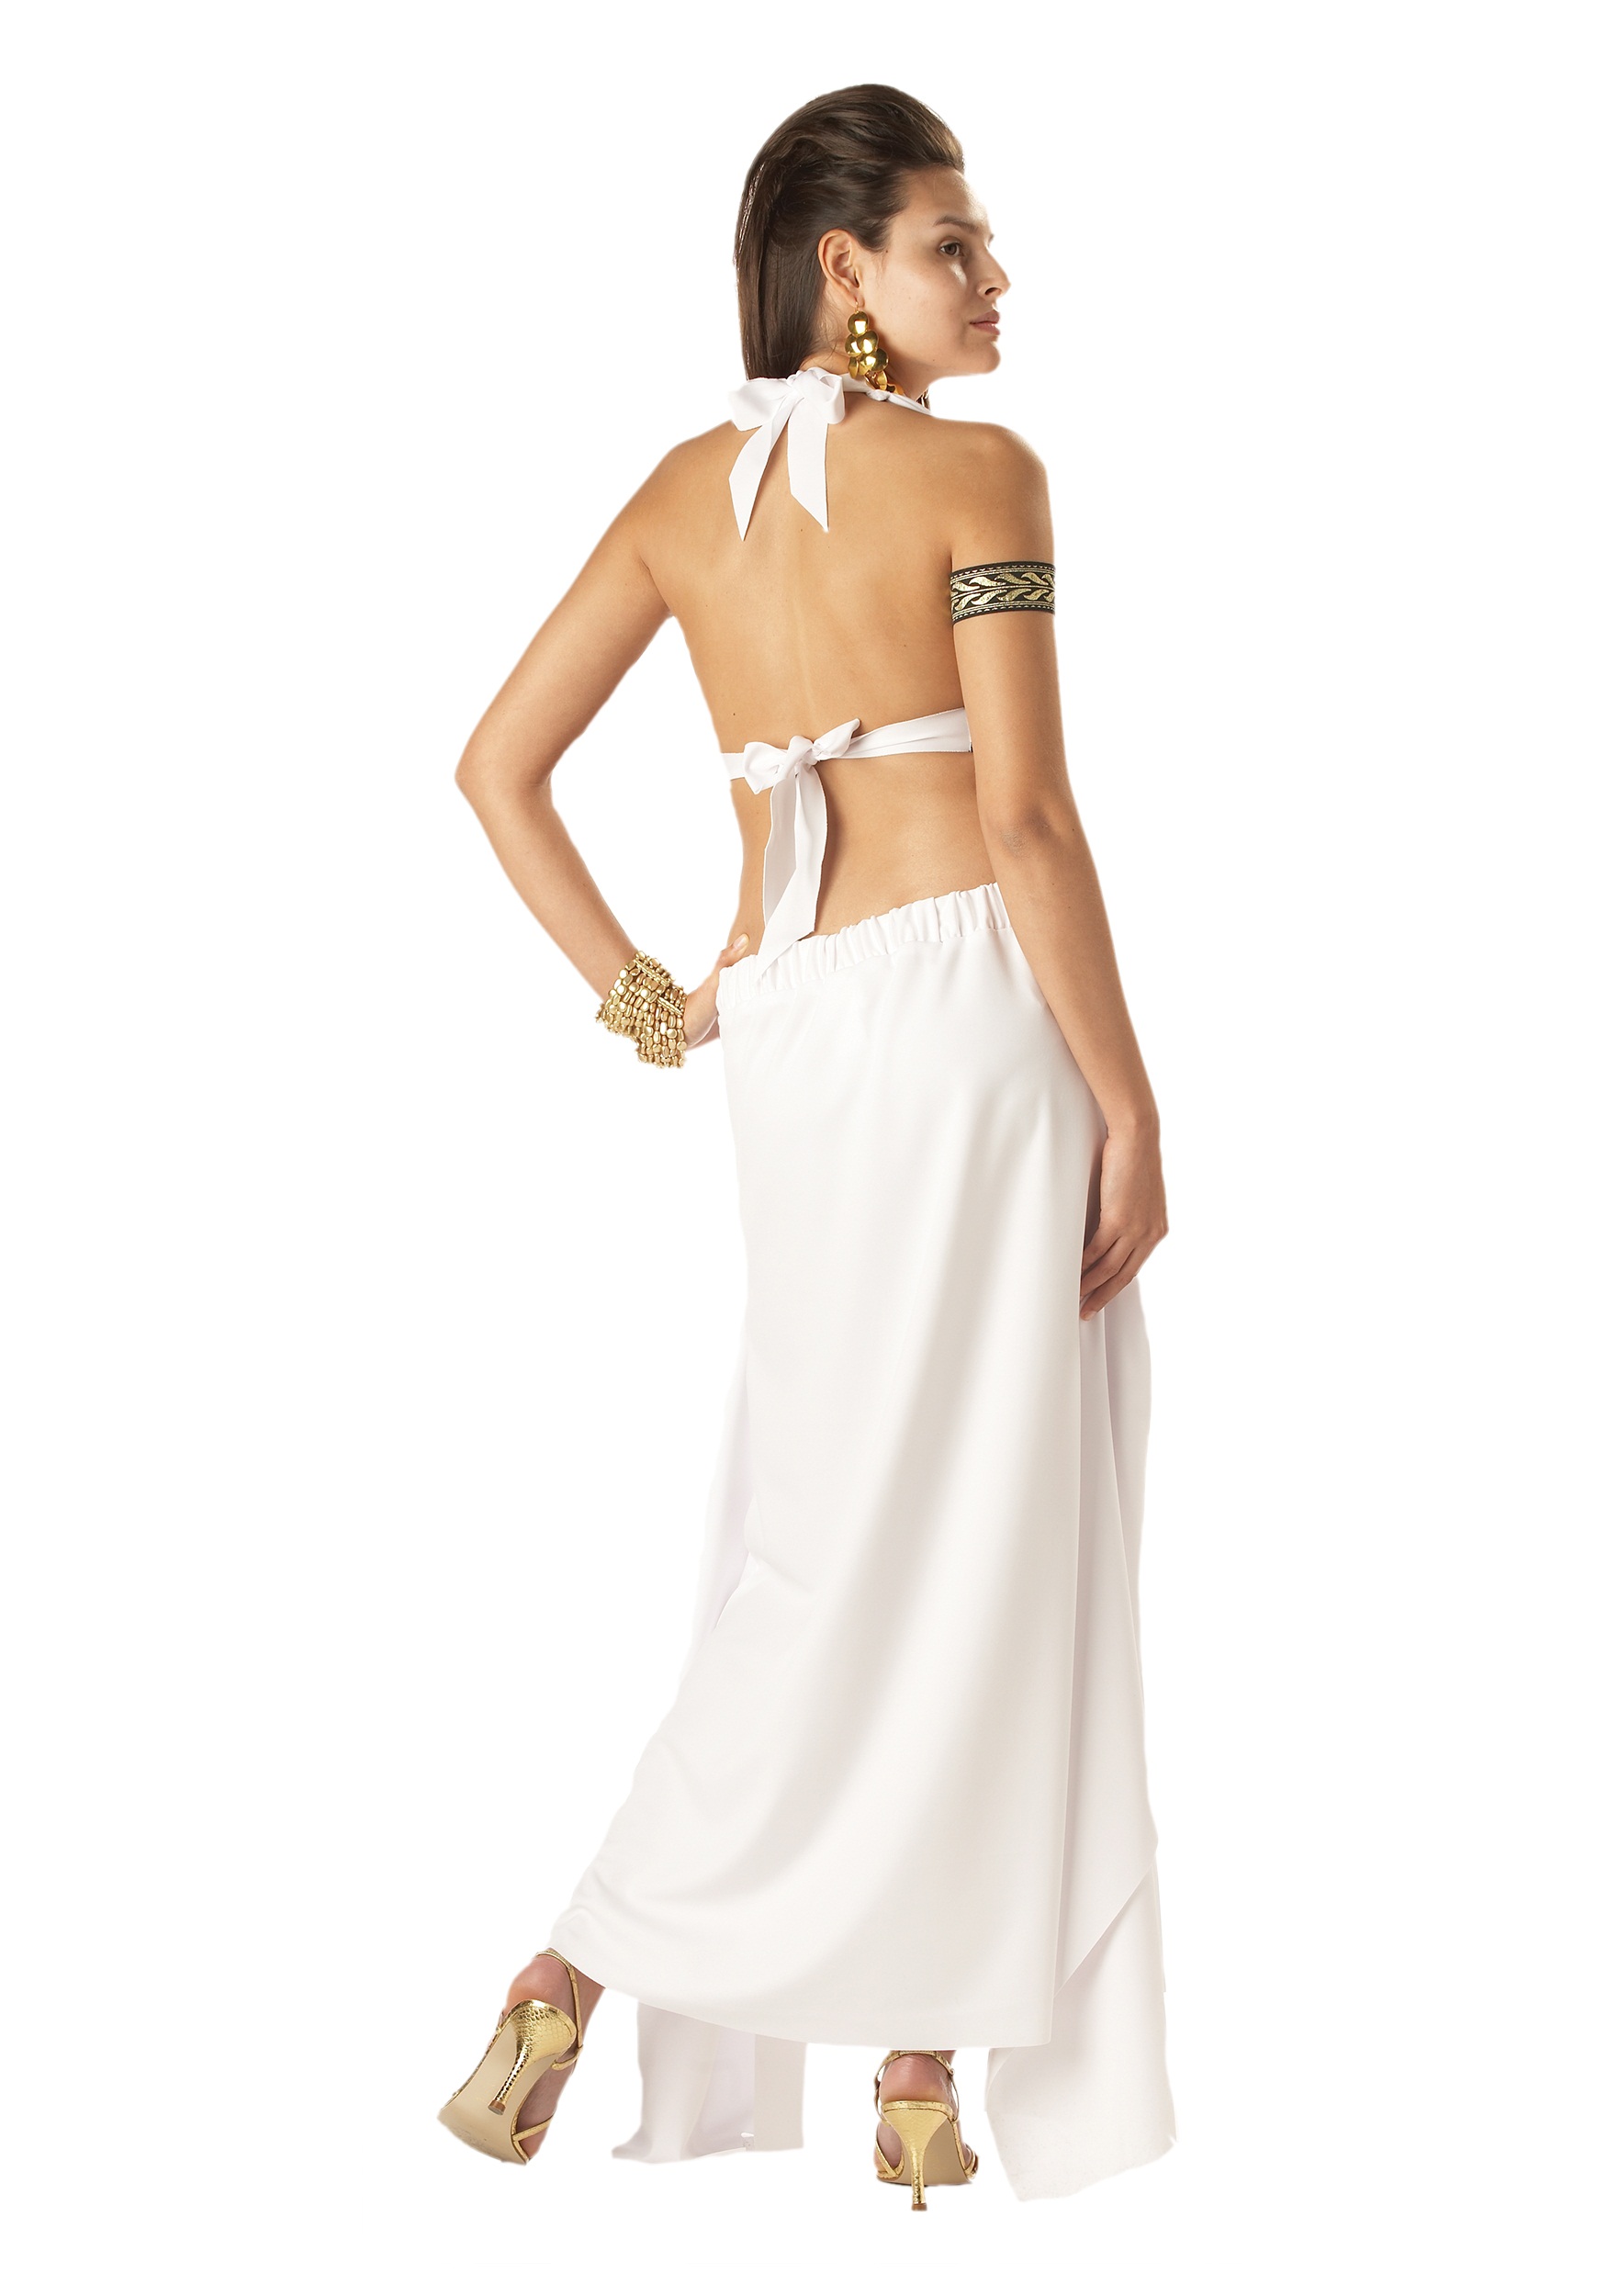 Spartan Queen Costume  , Ancient Greek Costume